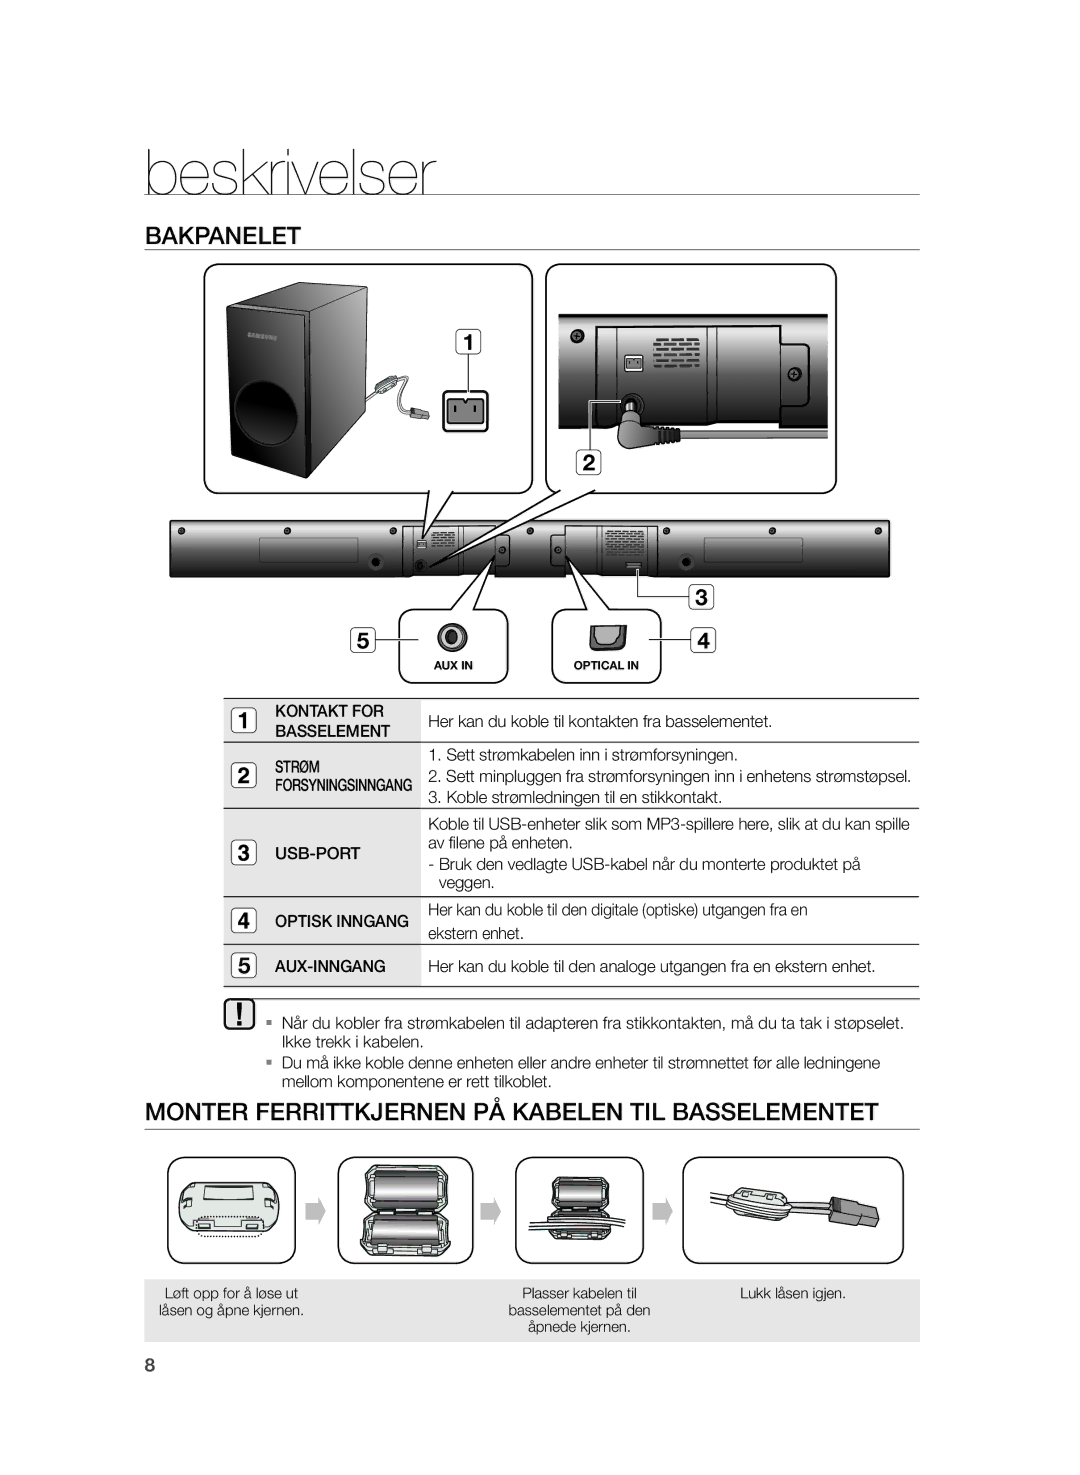 Samsung HW-H355/XE manual Bakpanelet, Monter Ferrittkjernen PÅ Kabelen TIL Basselementet 